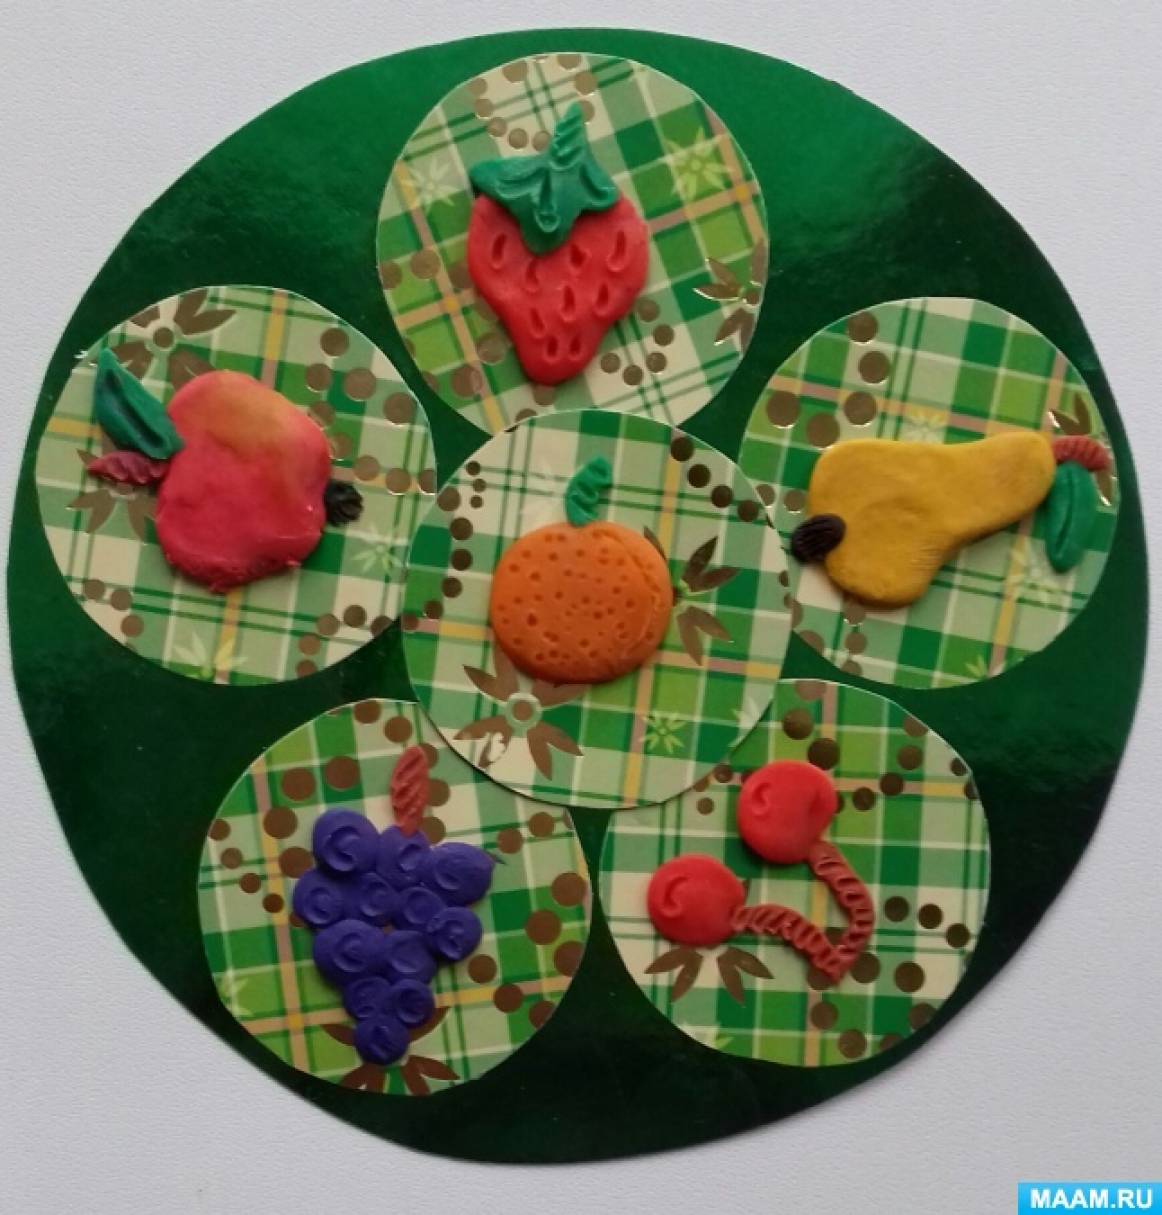 Мастер-класс по налепу из пластилина «Фрукты и ягоды» для детей старшего дошкольного возраста